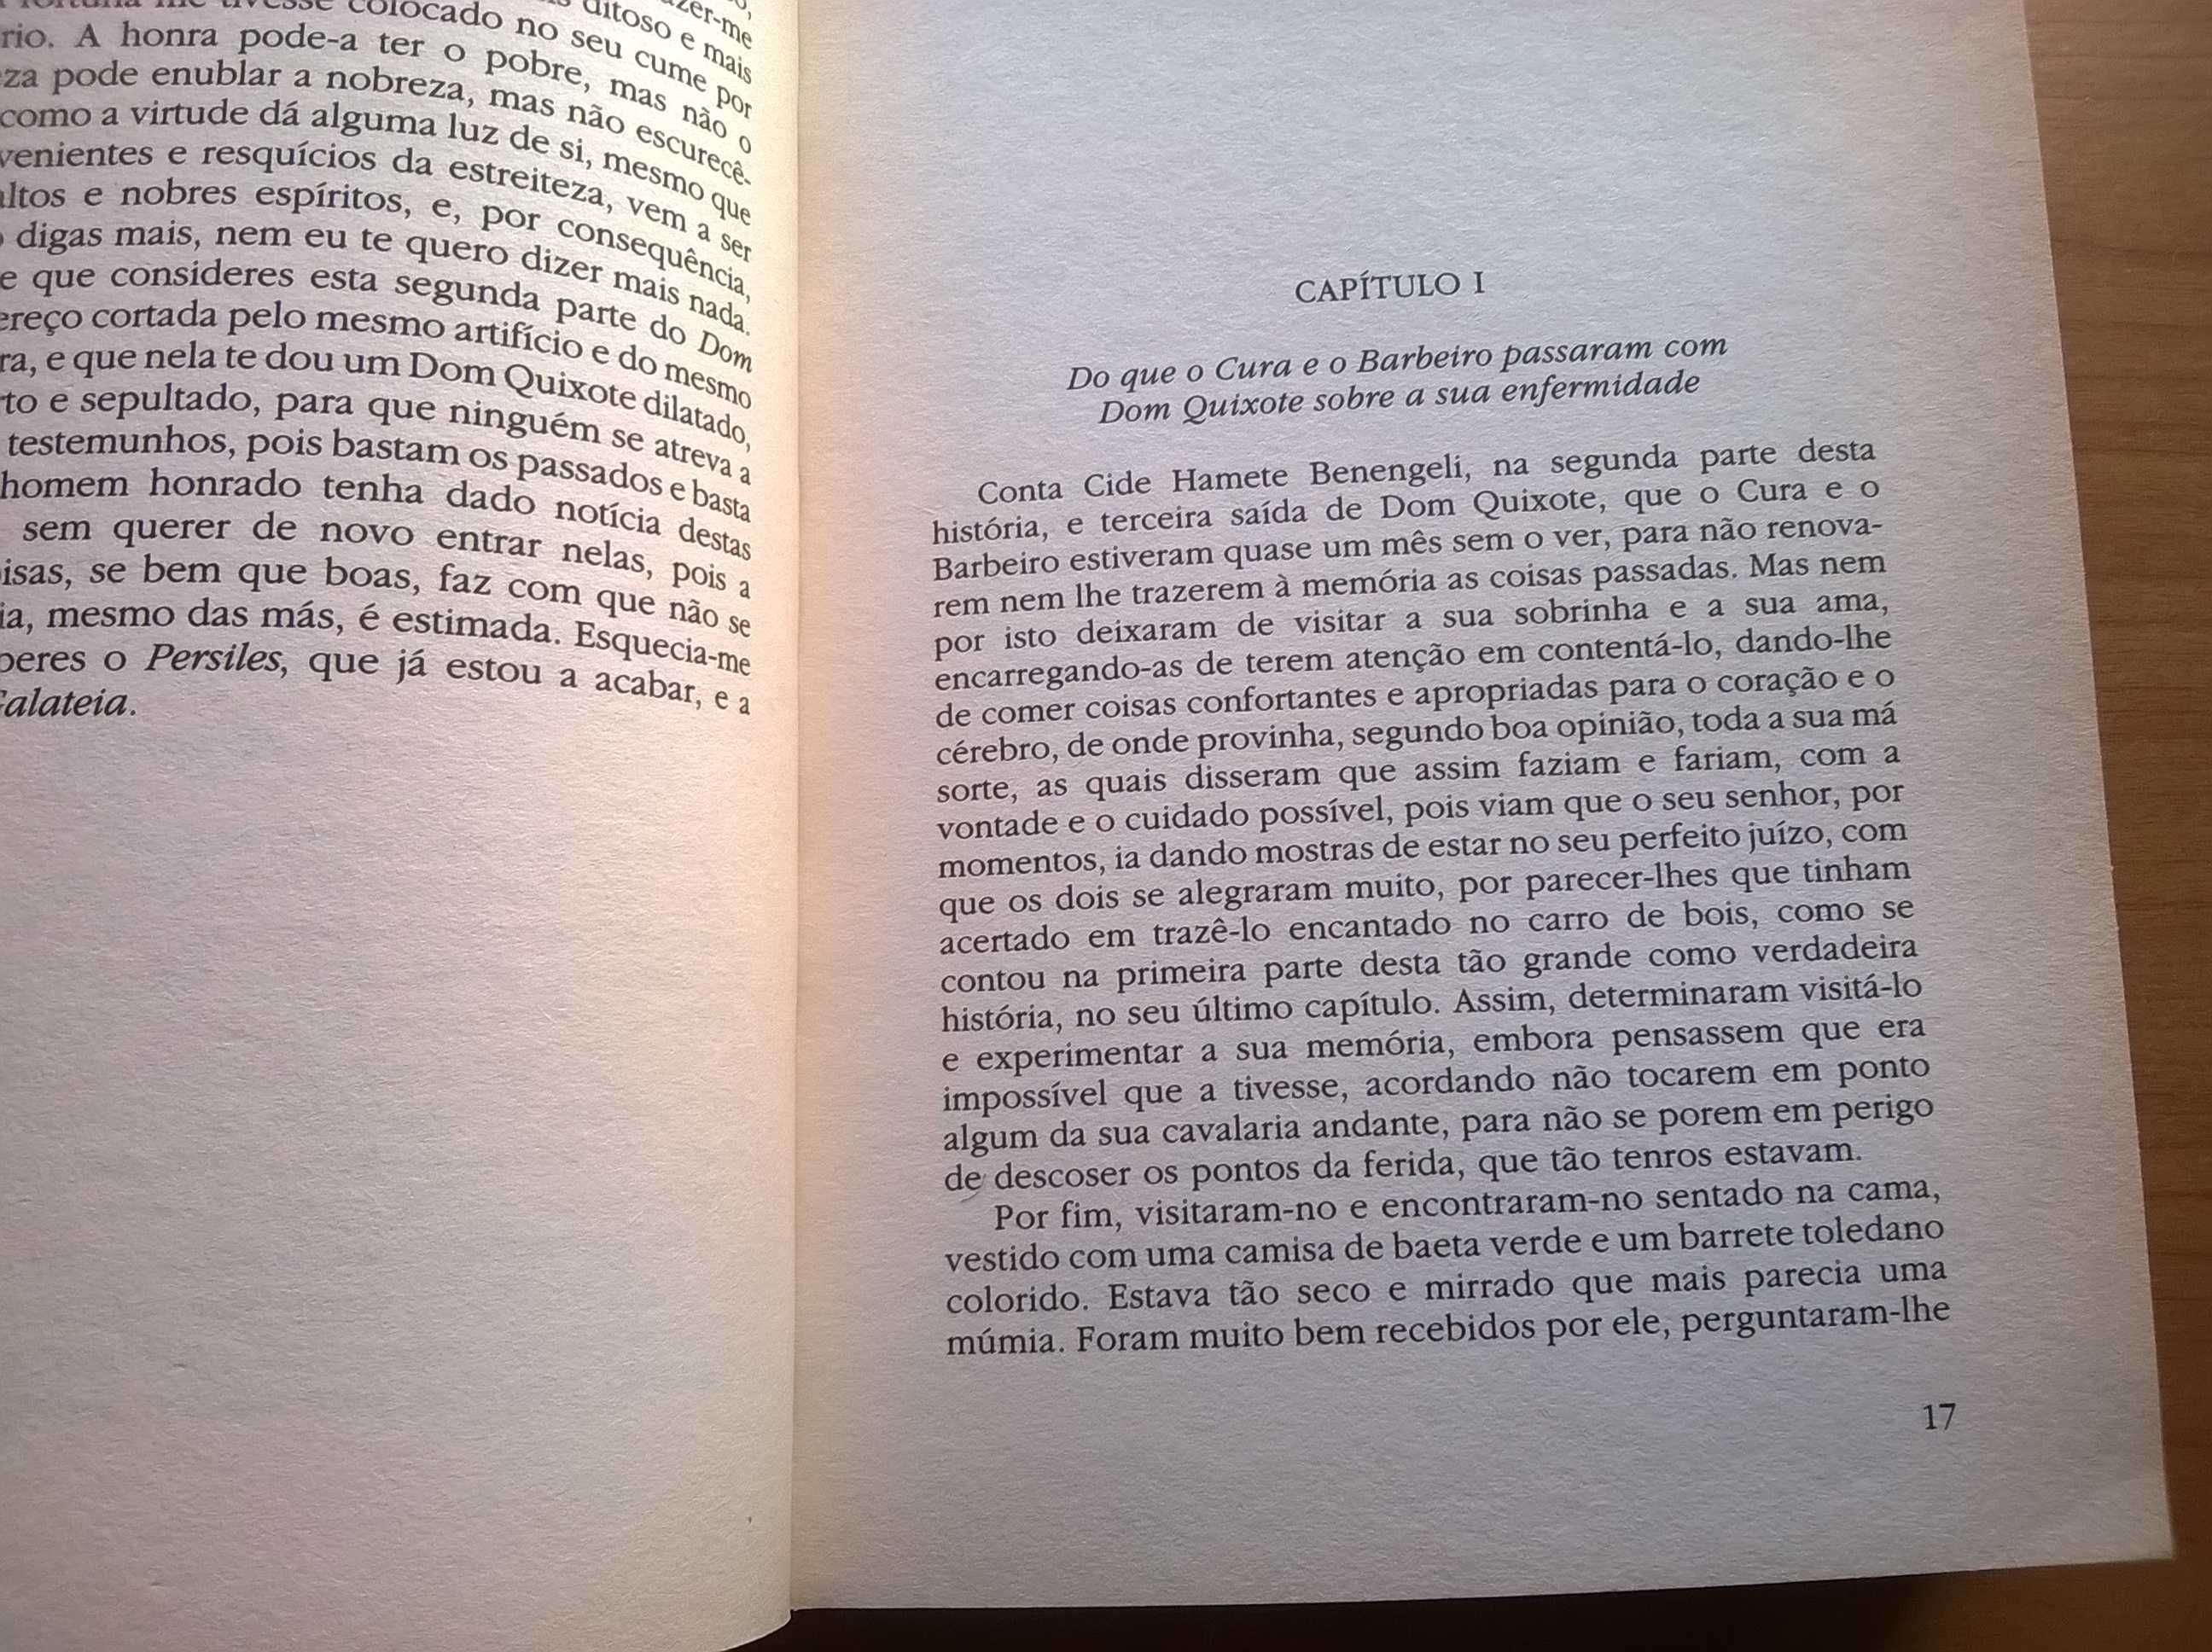 D. Quixote (de la Mancha) 2 vols. - Miguel de Cervantes Saavedra